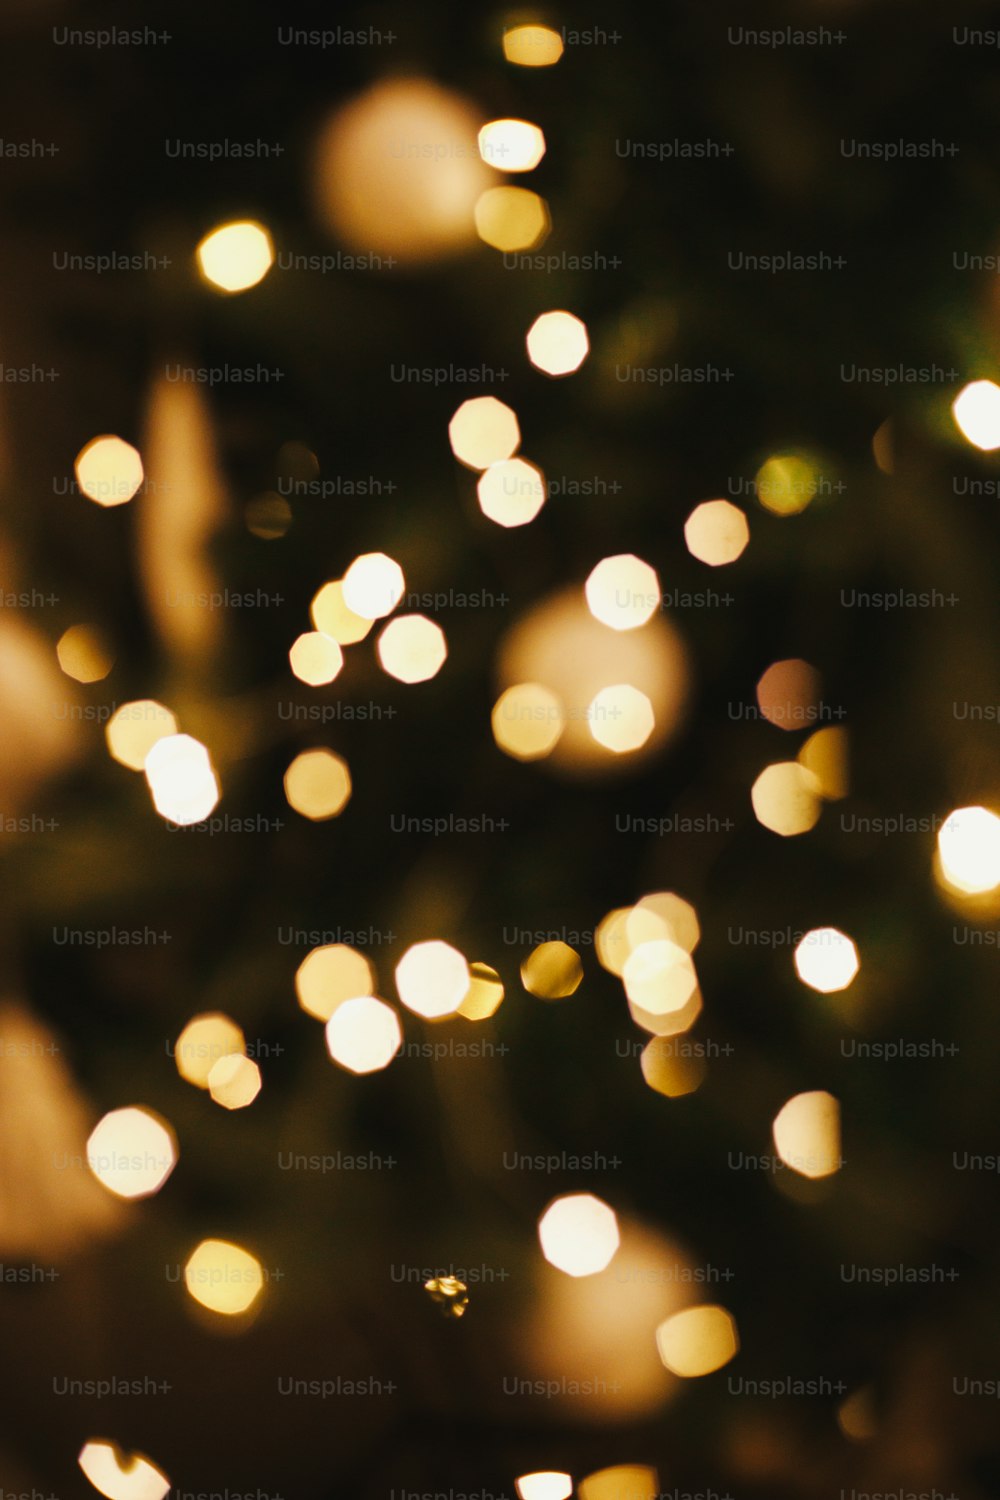 ゴールデンクリスマスライトボケ。クリスマスの背景、夜のお祝いの部屋で焦点がぼやけた装飾されたクリスマスツリーの輝く照明。大気。メリークリスマスとハッピーホリデー